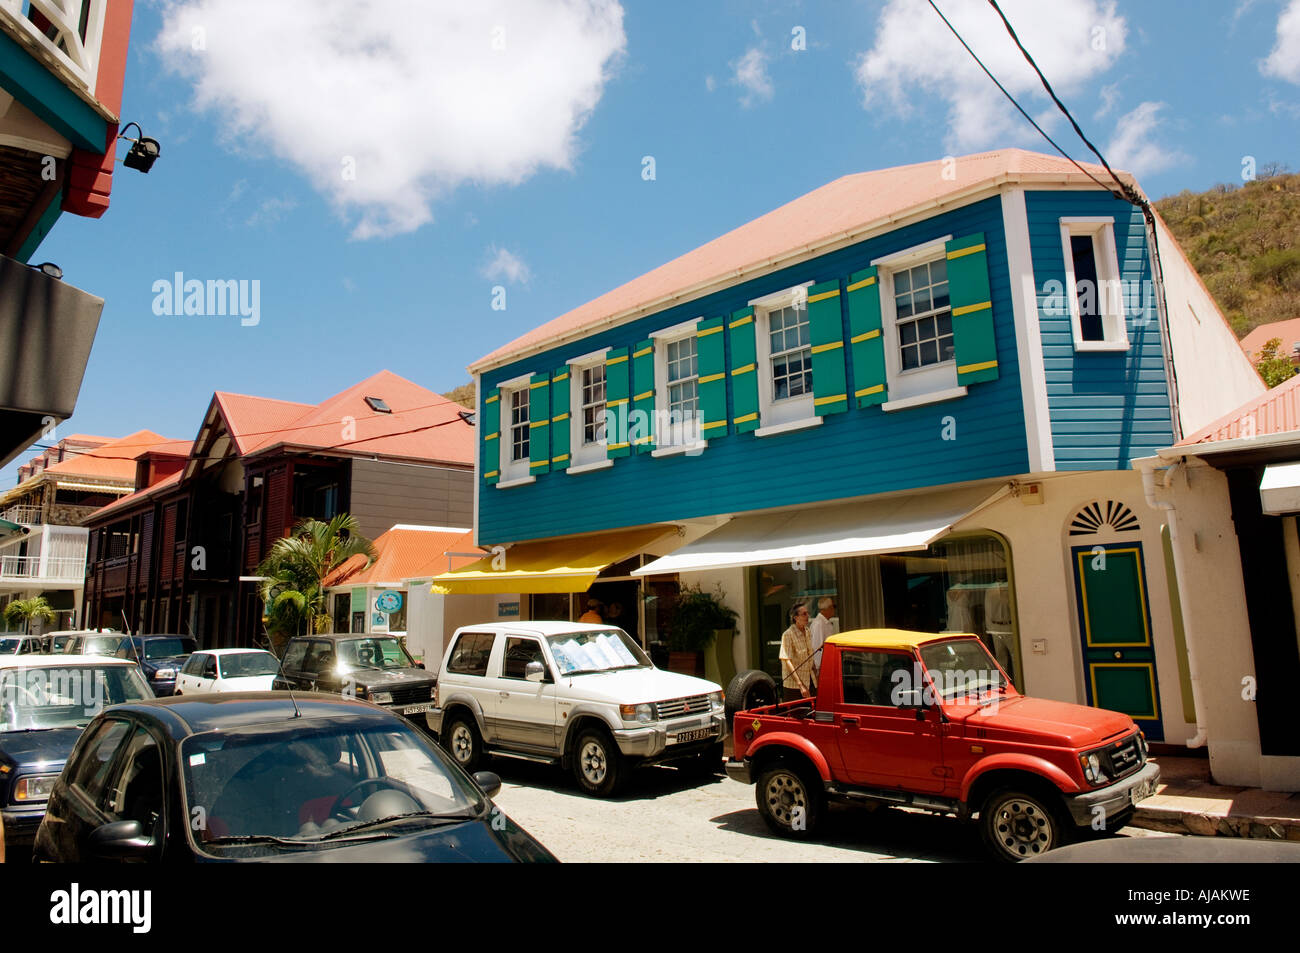 St Barths Gustavia with buildings along main street Rue de la